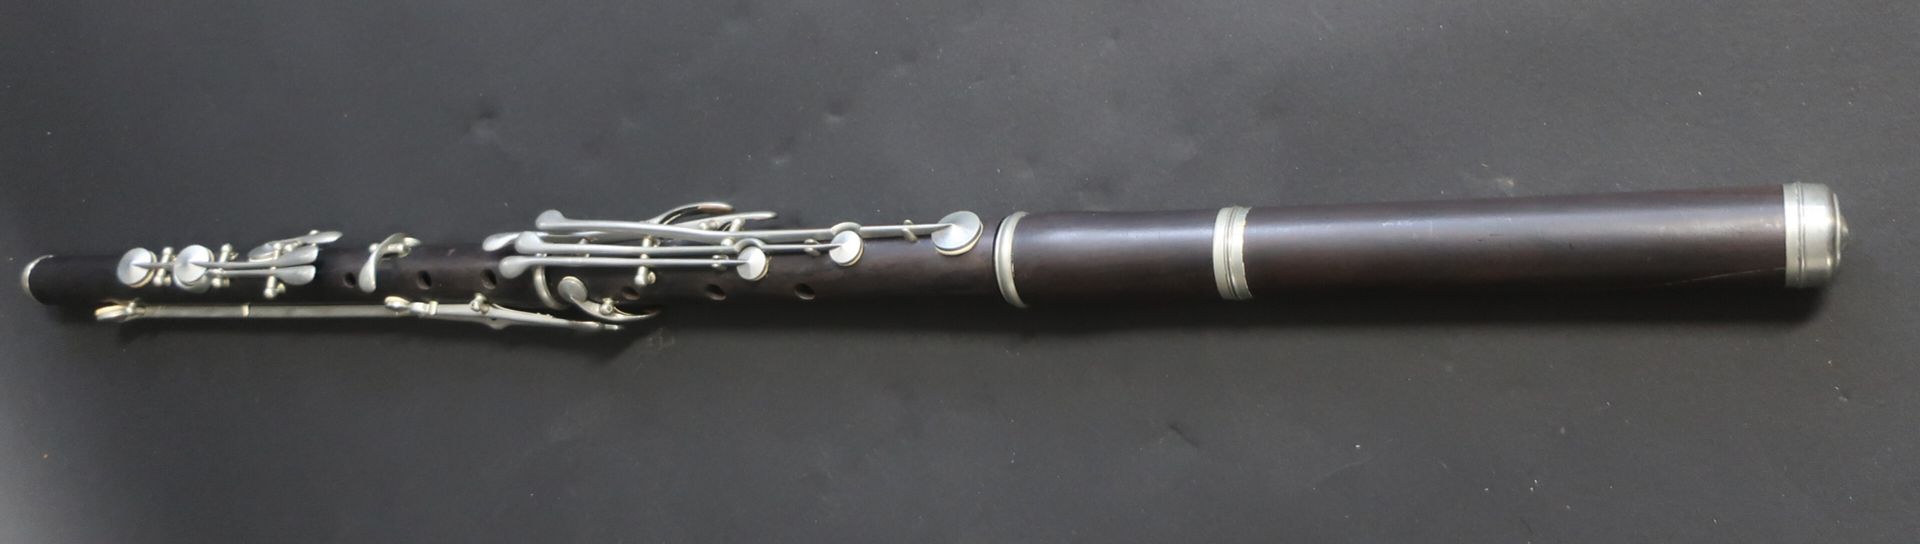 Null Flauto di ebano. Lunghezza: 73 cm (crepe)